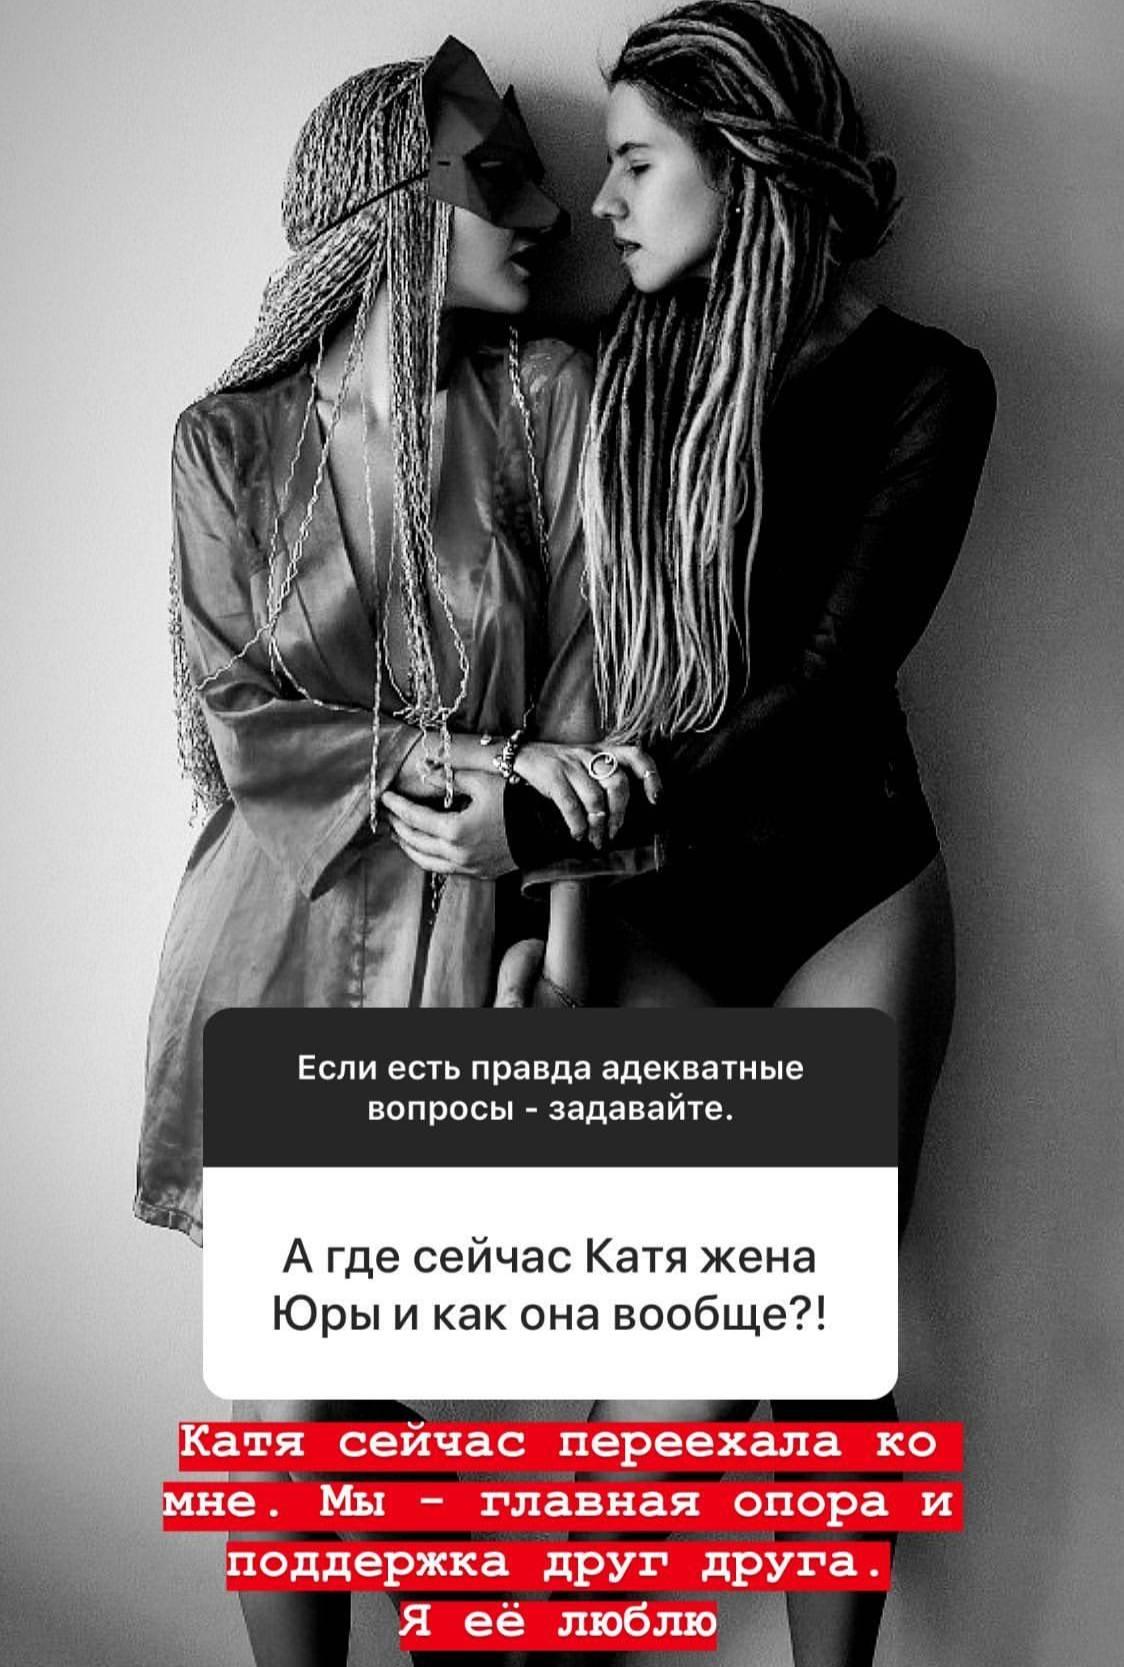 Фото © Instagram / pereverzeva_lena